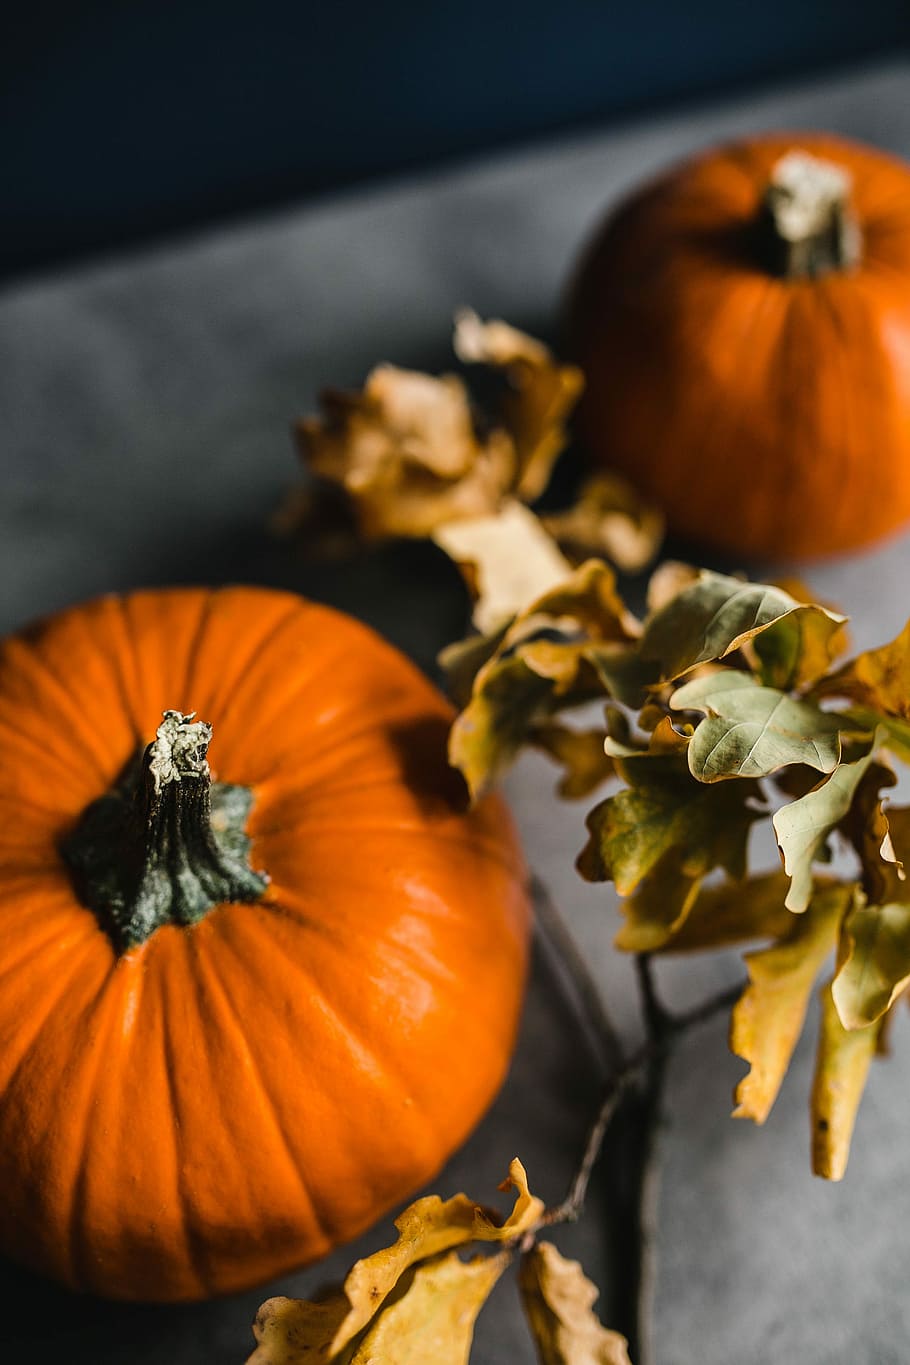 abóbora de outono, outono, abóbora, dia das bruxas, ação de graças, laranja cor, estação, vegetal, decoração, outubro